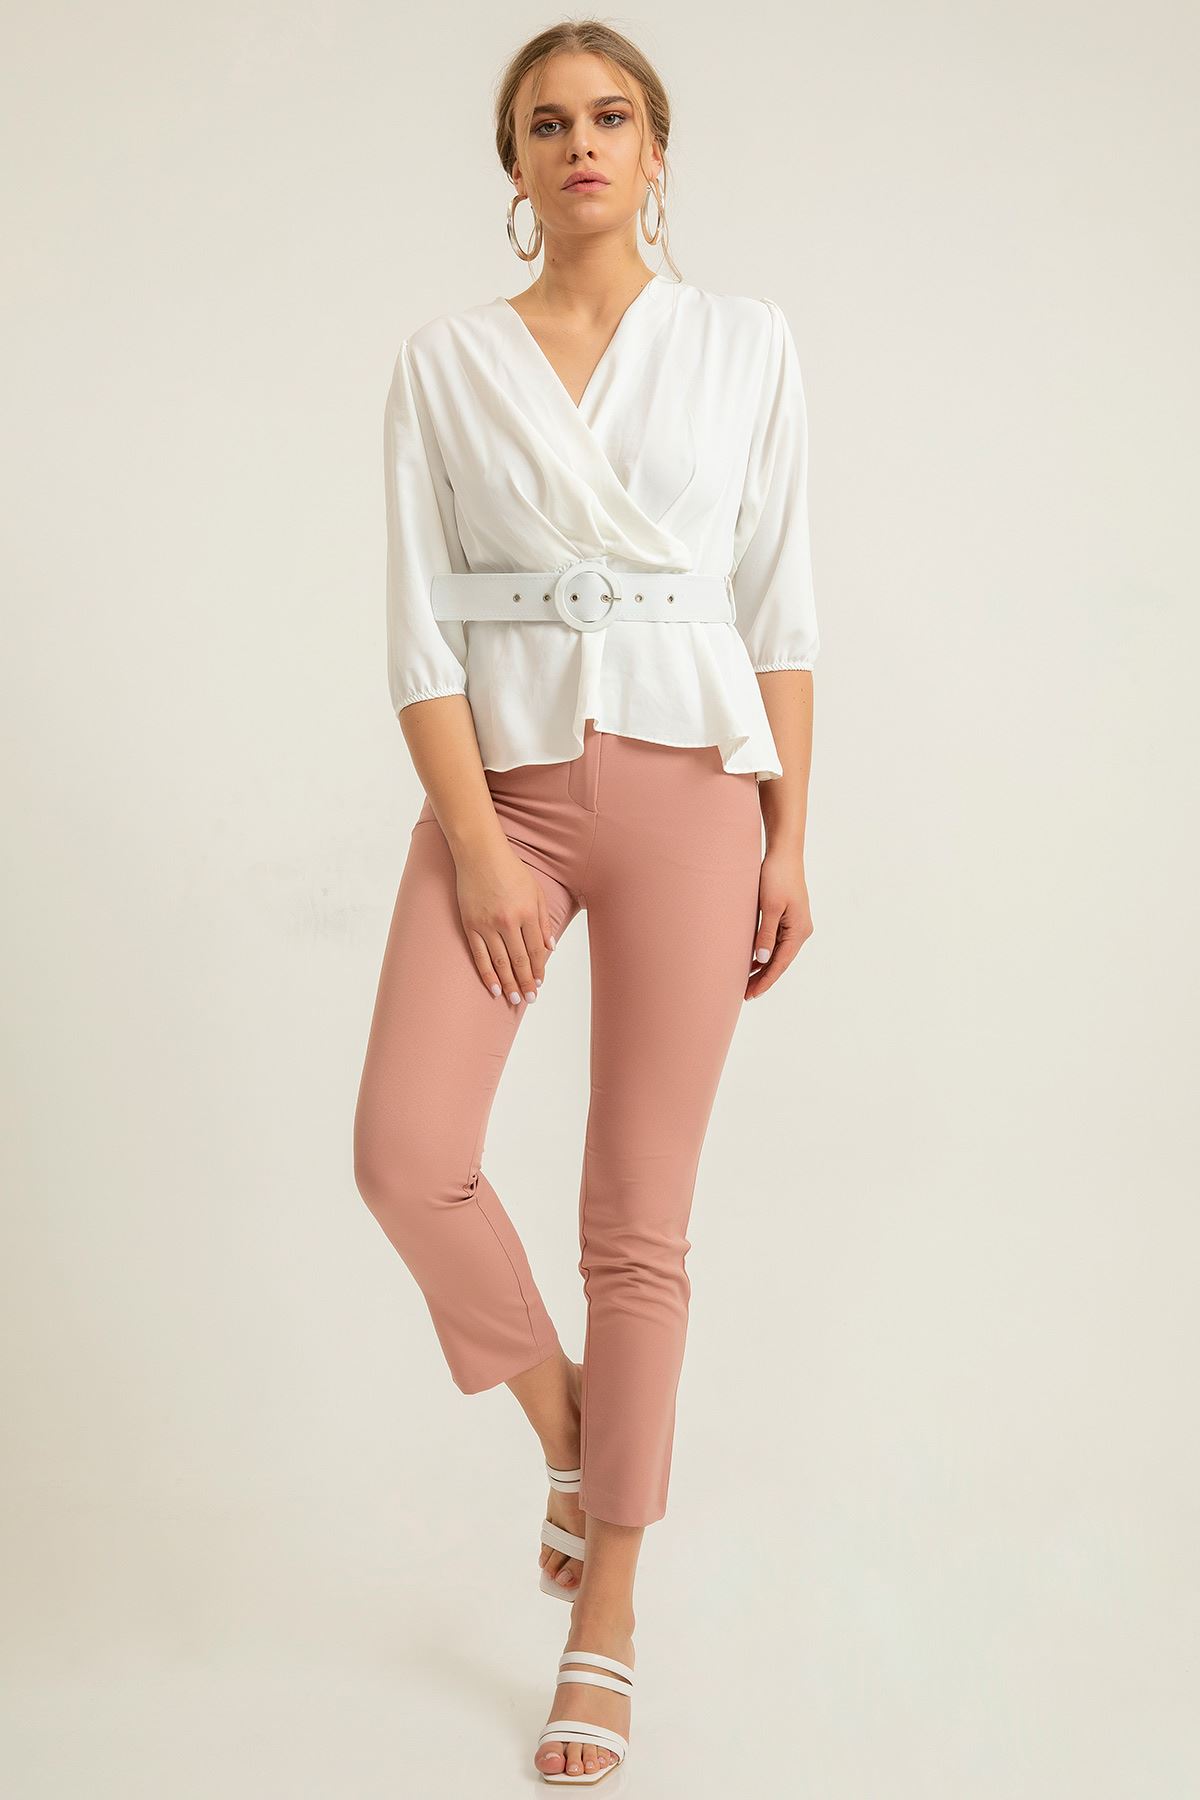 атласный ткань приталенные Женские брюки - Светло розовый